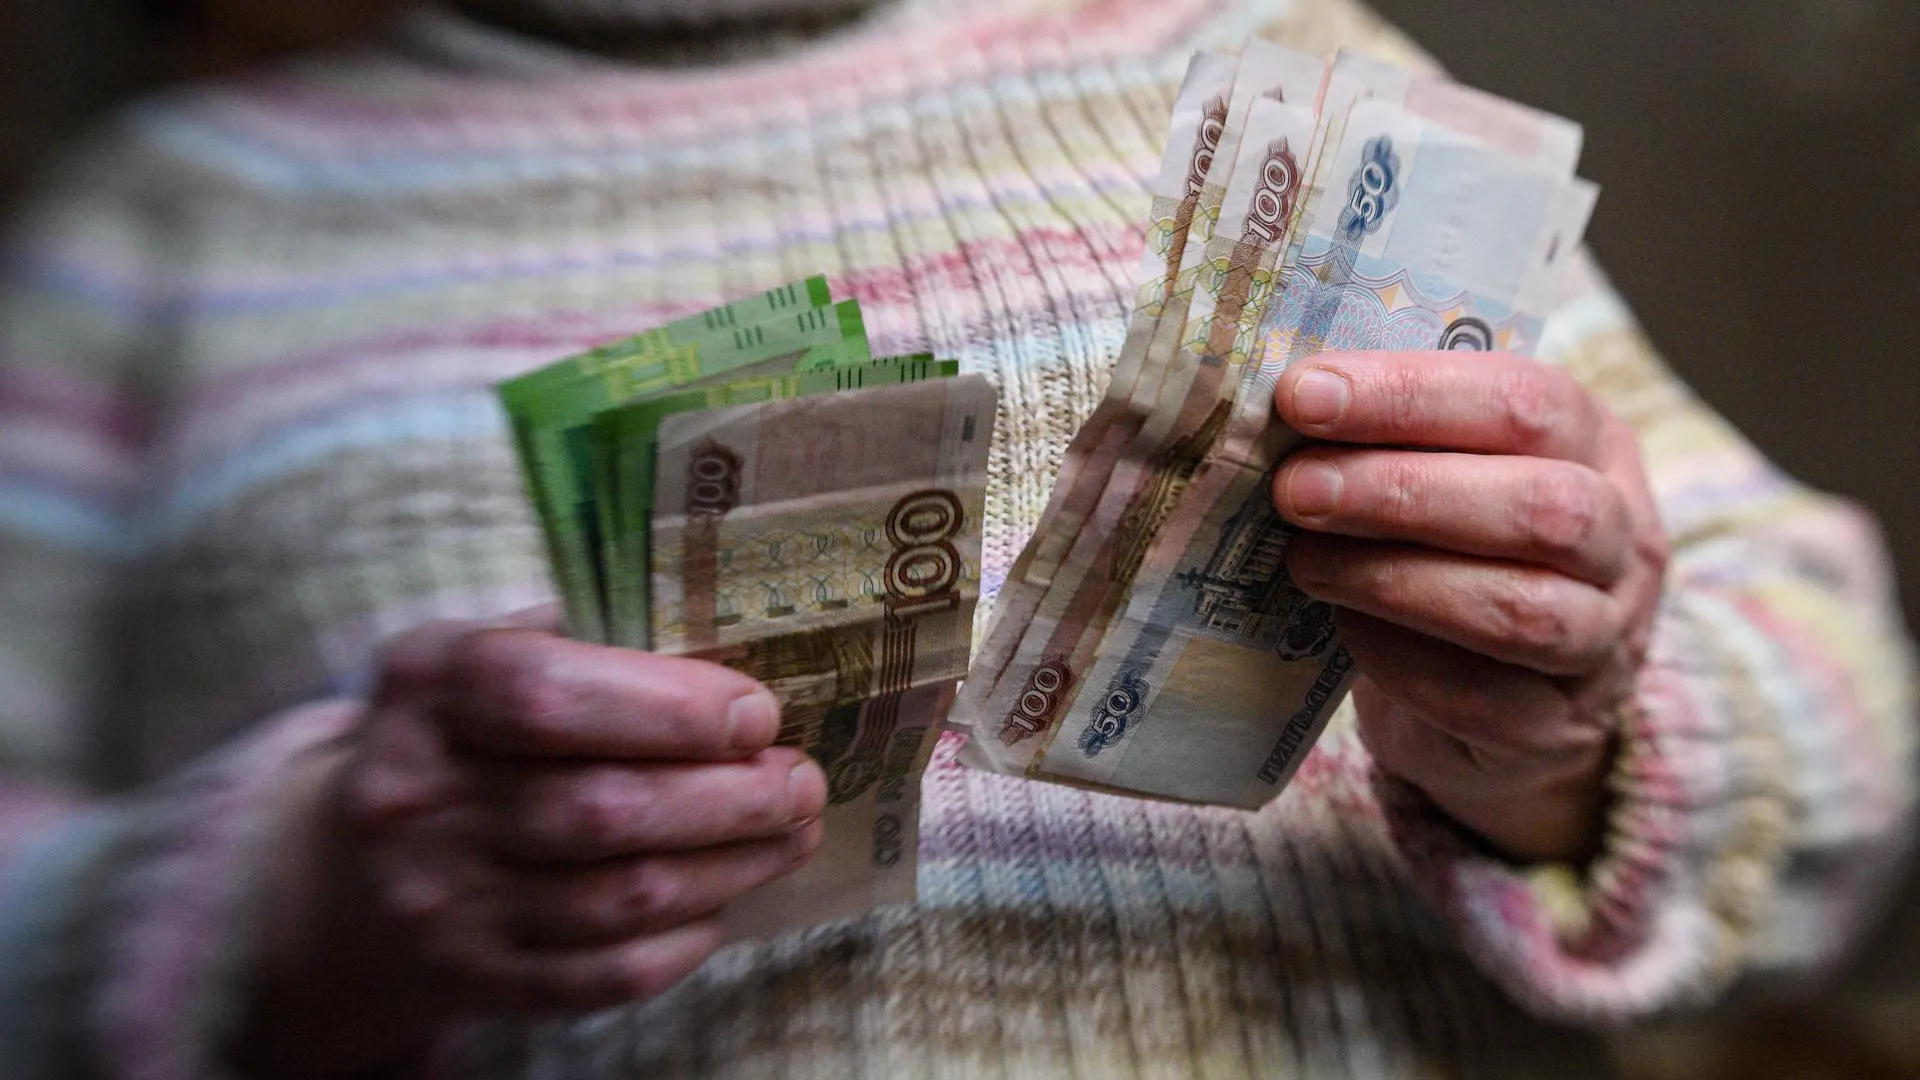 Экономист Беляев подверг критике предложенные главой Цетробанка шаги по борьбе с бедностью в РФ